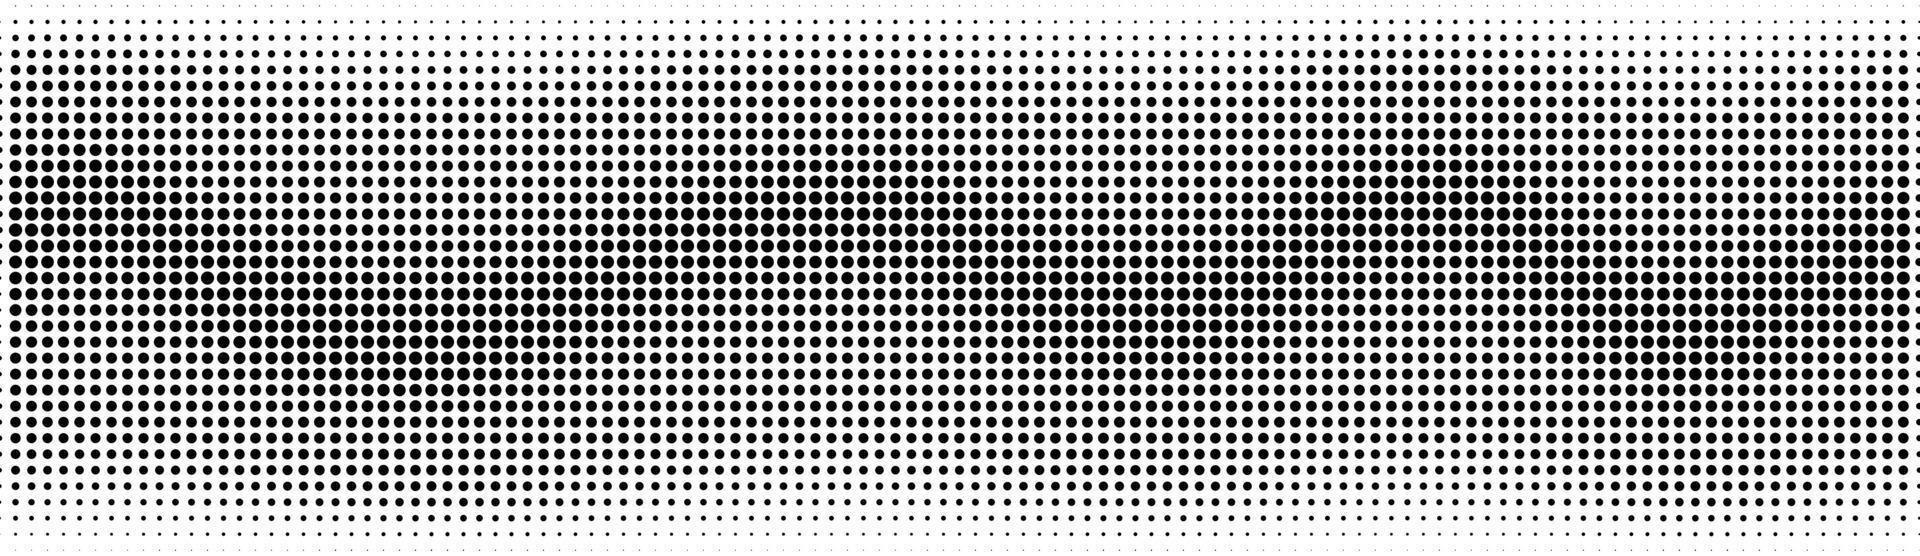 halftoon in abstracte stijl. geometrische retro banner vector textuur. moderne afdrukken. witte en zwarte achtergrond. lichteffect